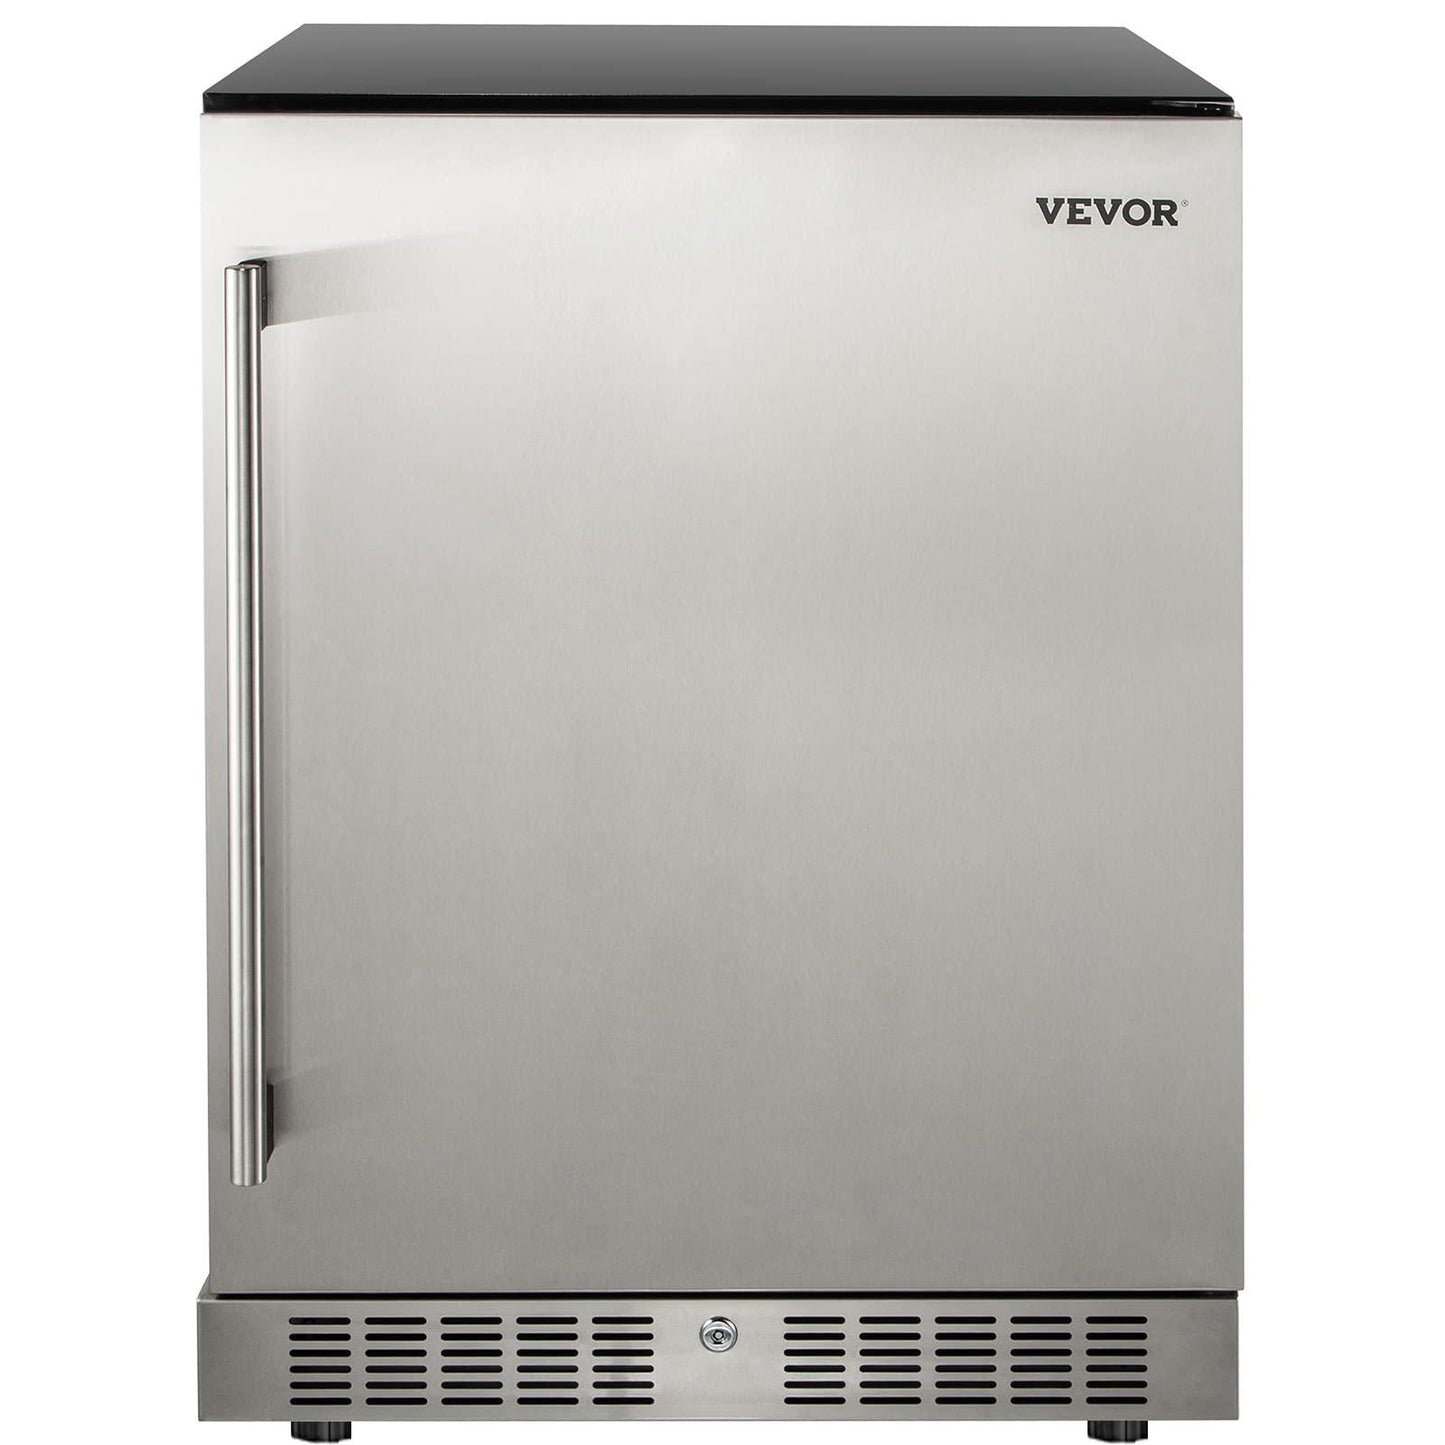 VEVOR 24'' Built-in Beverage Cooler, 5.3 cu.ft. Stainless Steel Beverage Refrigerator w/Embraco Compressor, 142 Can Beer Fridge for Home Bar Office Outdoor Indoor Use, 150L, Black & Silver - CookCave